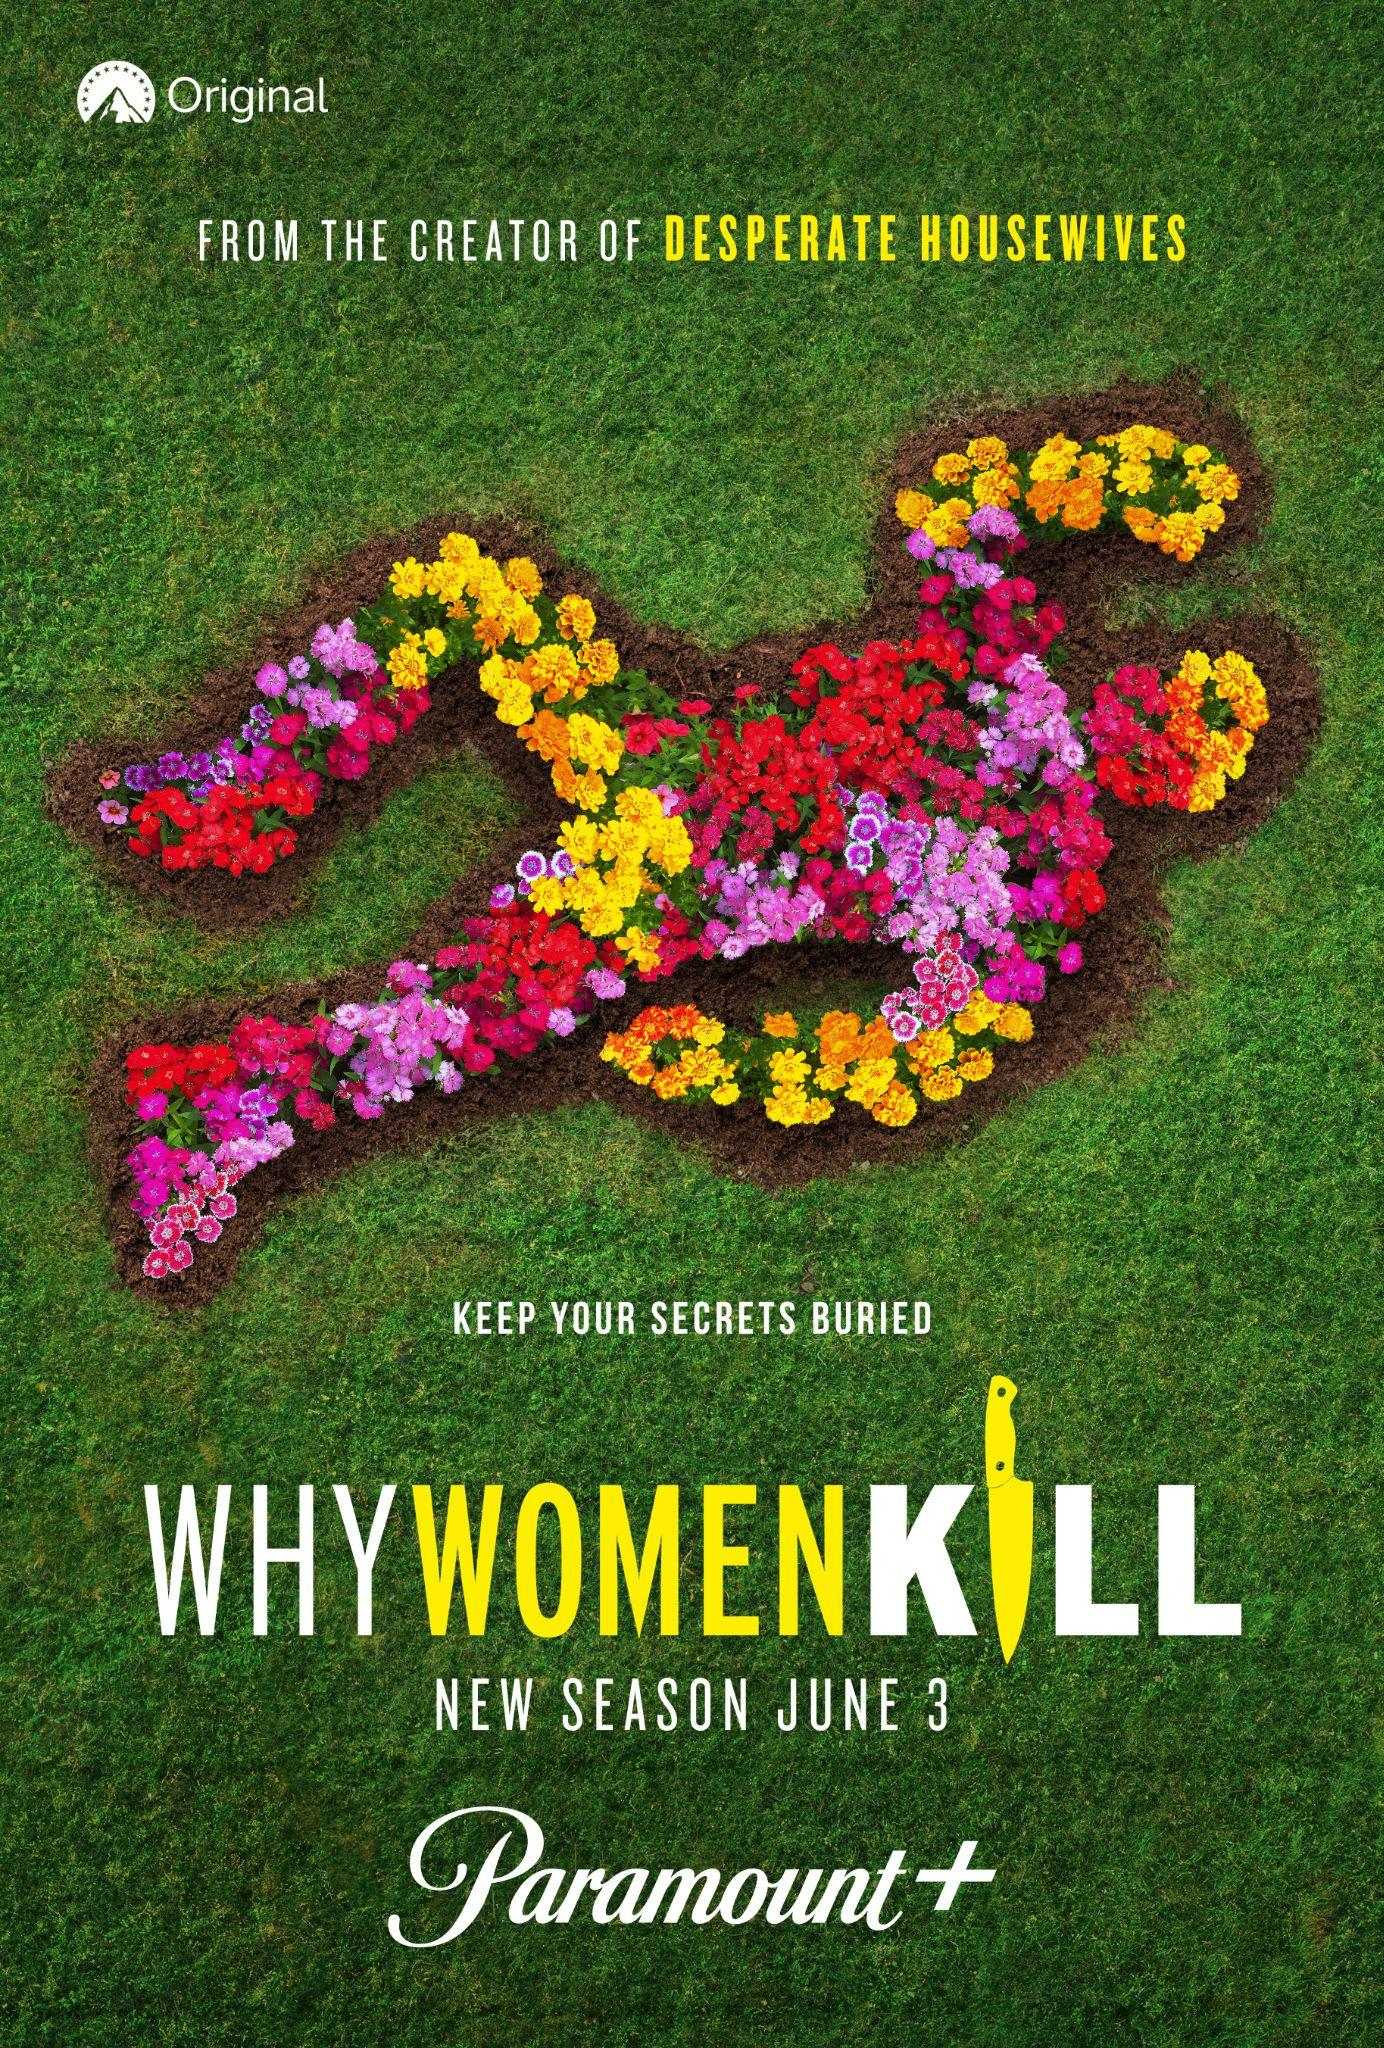 Why women kill season 2